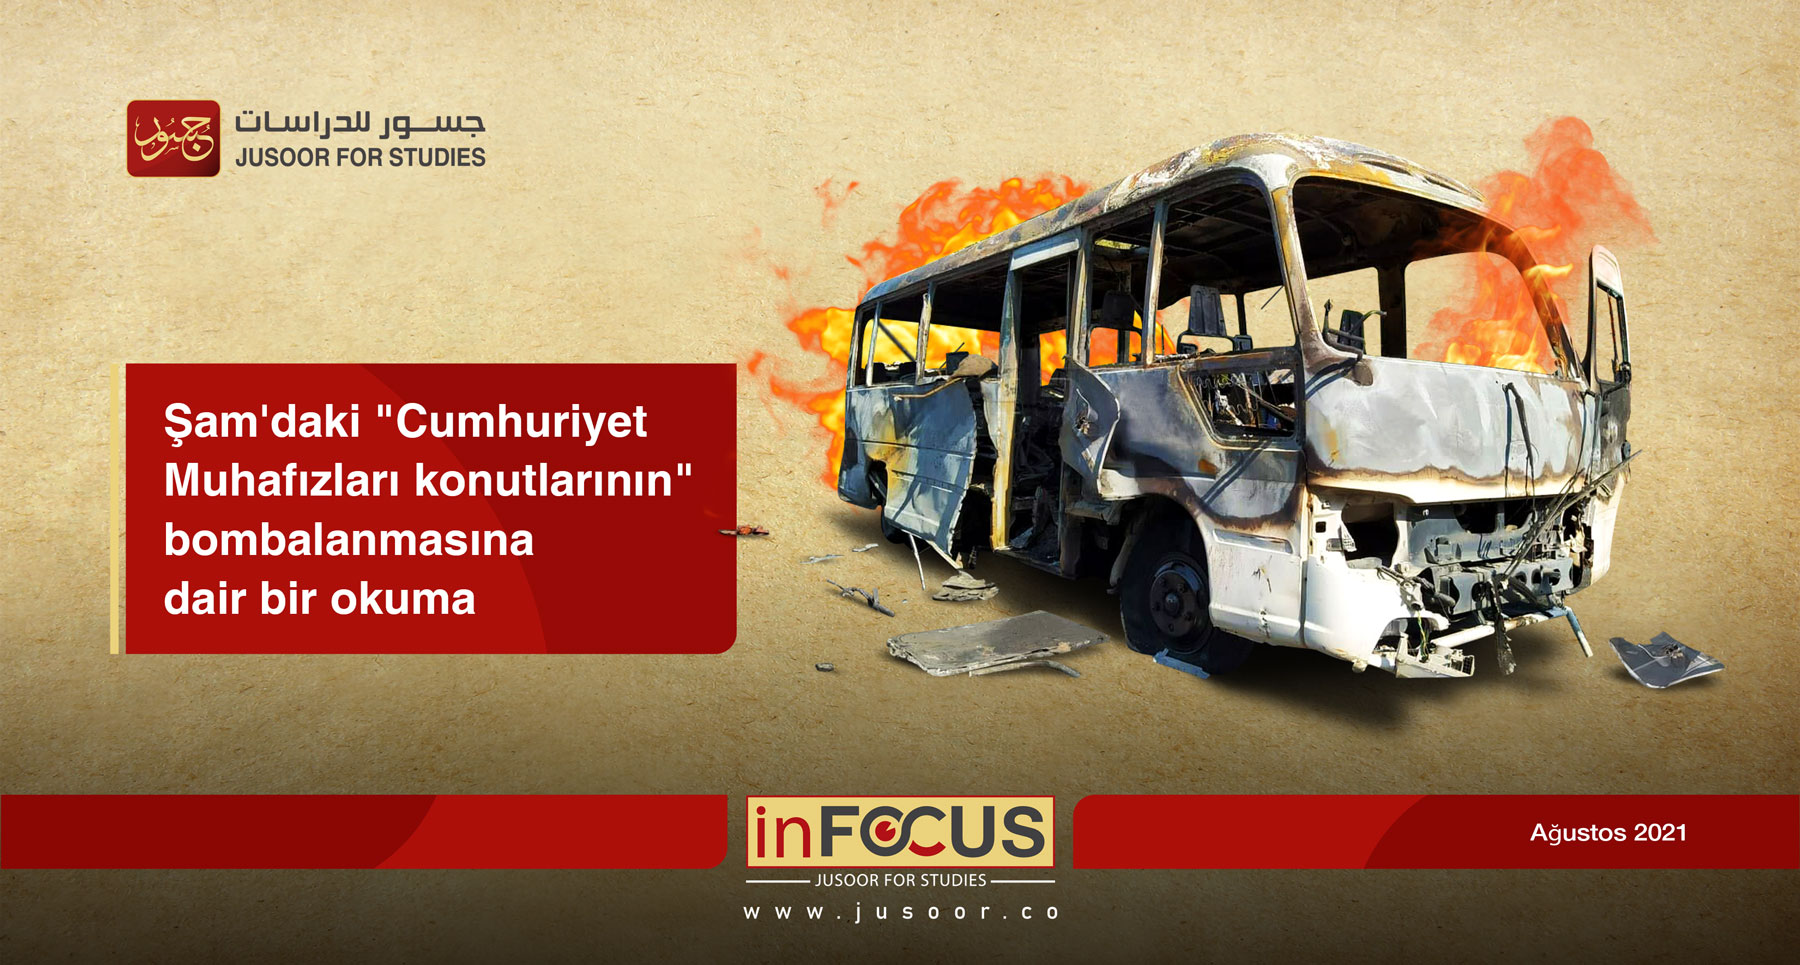 Şam'daki "Cumhuriyet Muhafızları konutlarının" bombalanmasına dair bir okuma